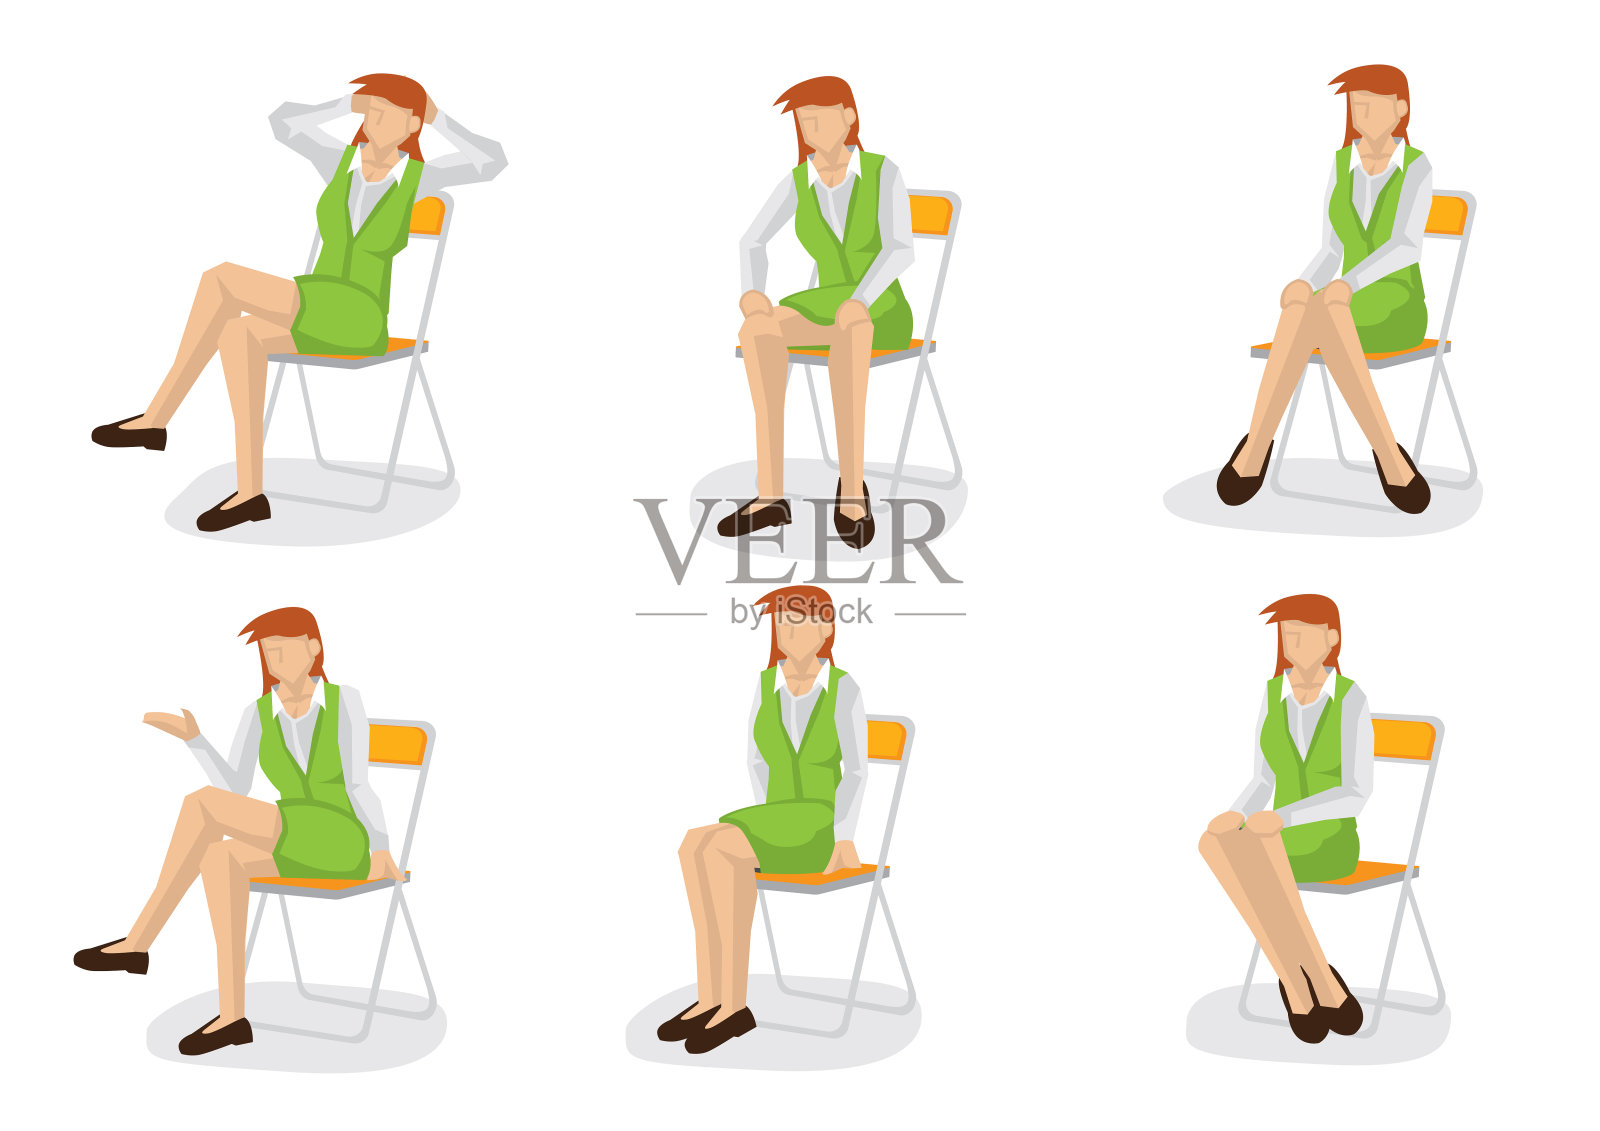 套装的商业妇女在各种各样的坐姿。插画图片素材